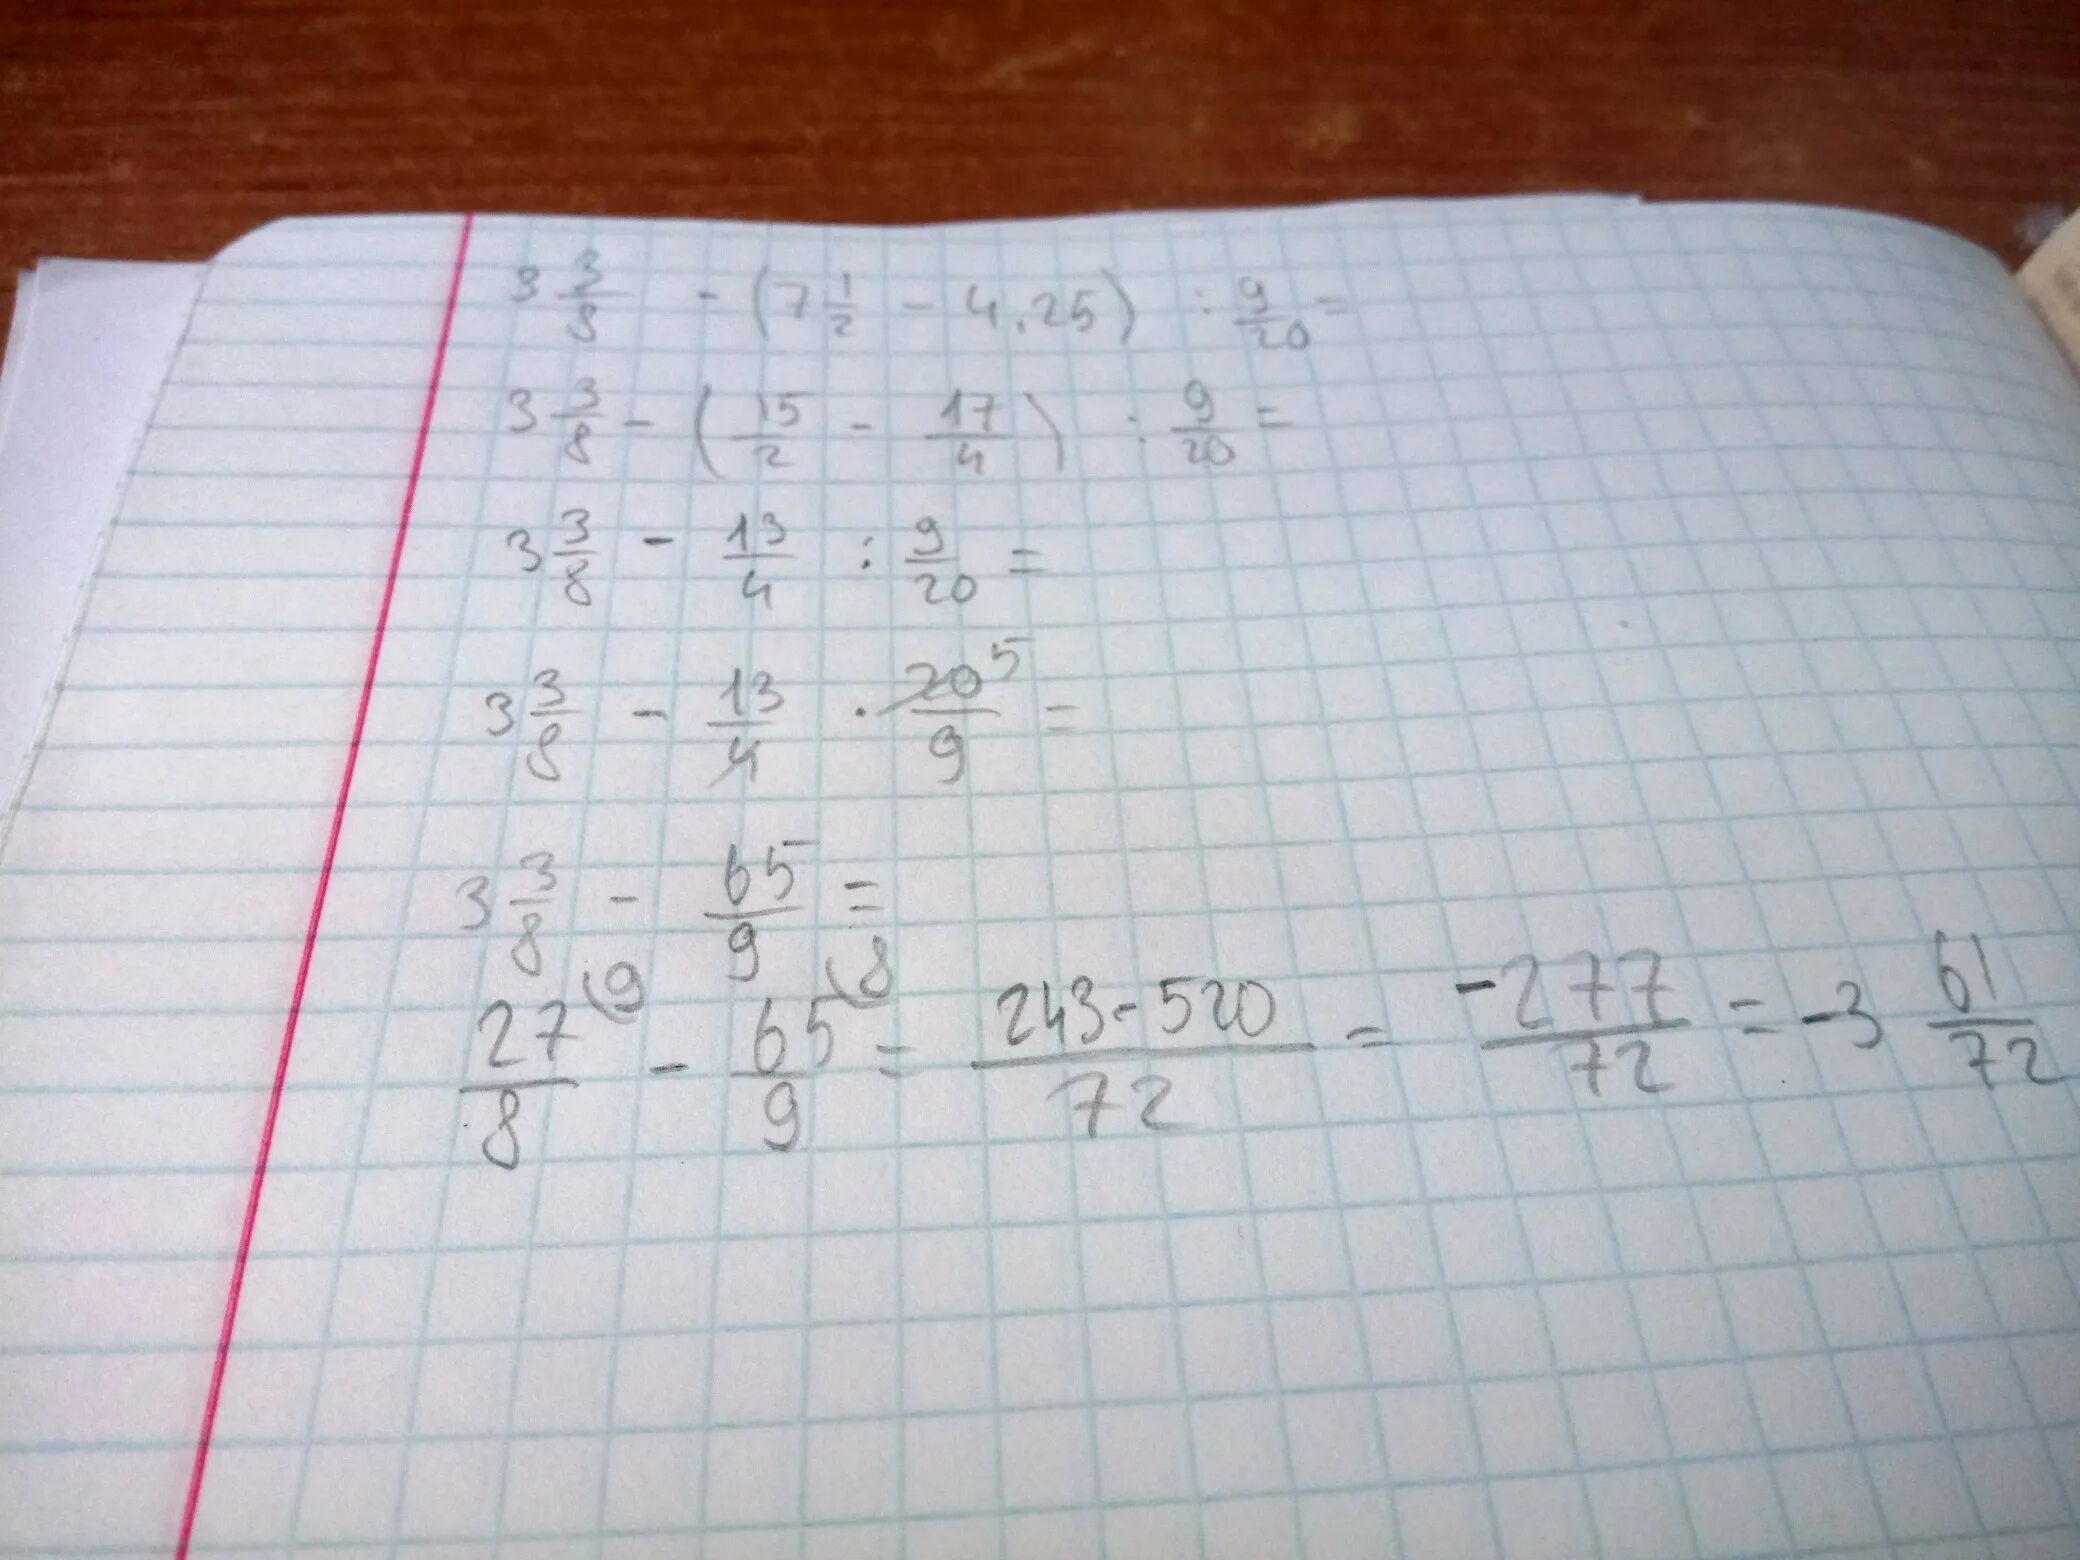 9 20 3 8 решение. А3-б3. Решить пример -3.8-(-5.3)-(-1.8)-(-4.7). Как решить такой пример 9.3=. Решить пример 8*3:6.